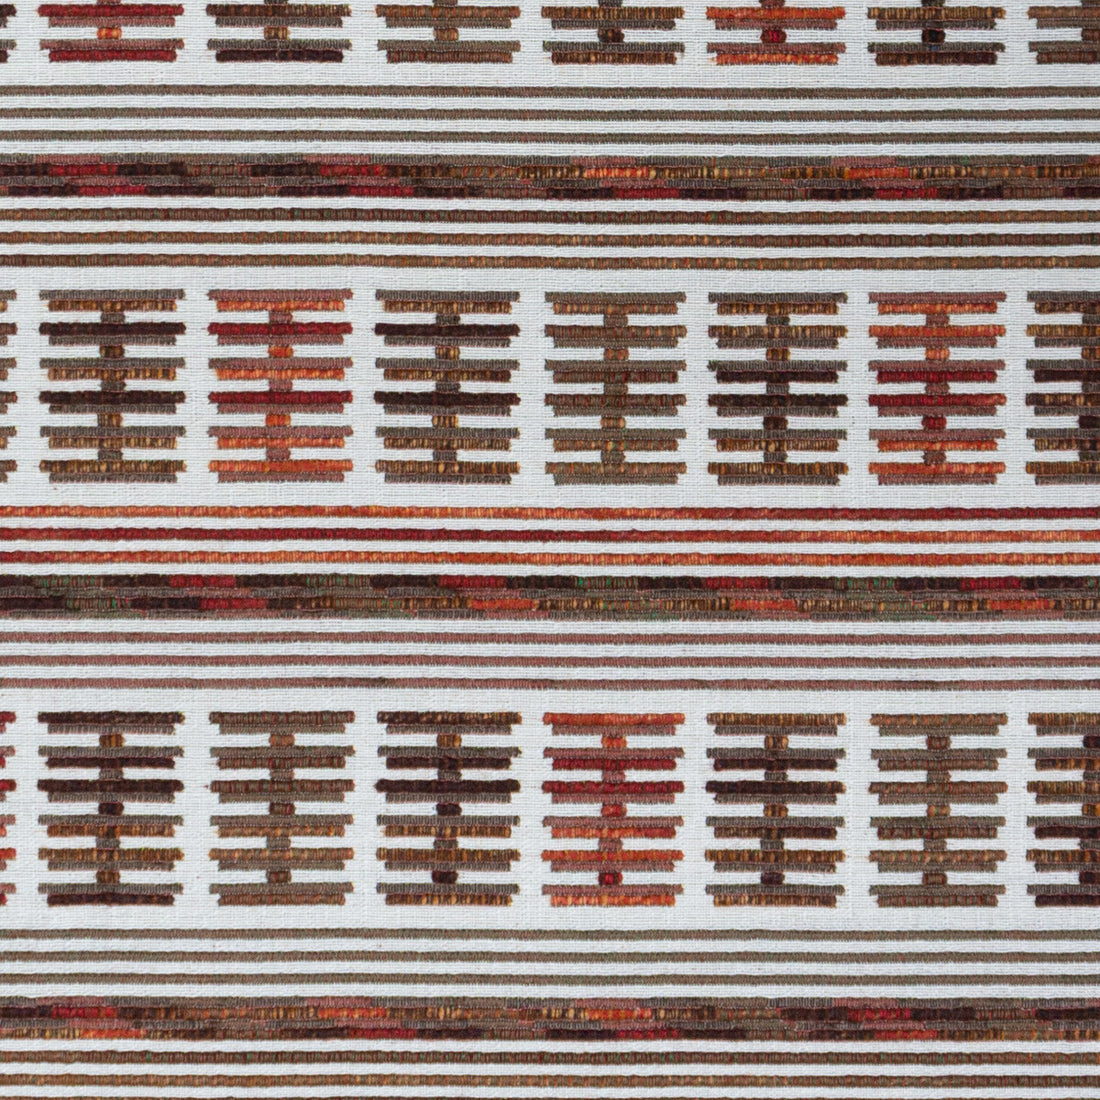 Toro Sentado fabric in teja color - pattern GDT5657.002.0 - by Gaston y Daniela in the Gaston Rio Grande collection